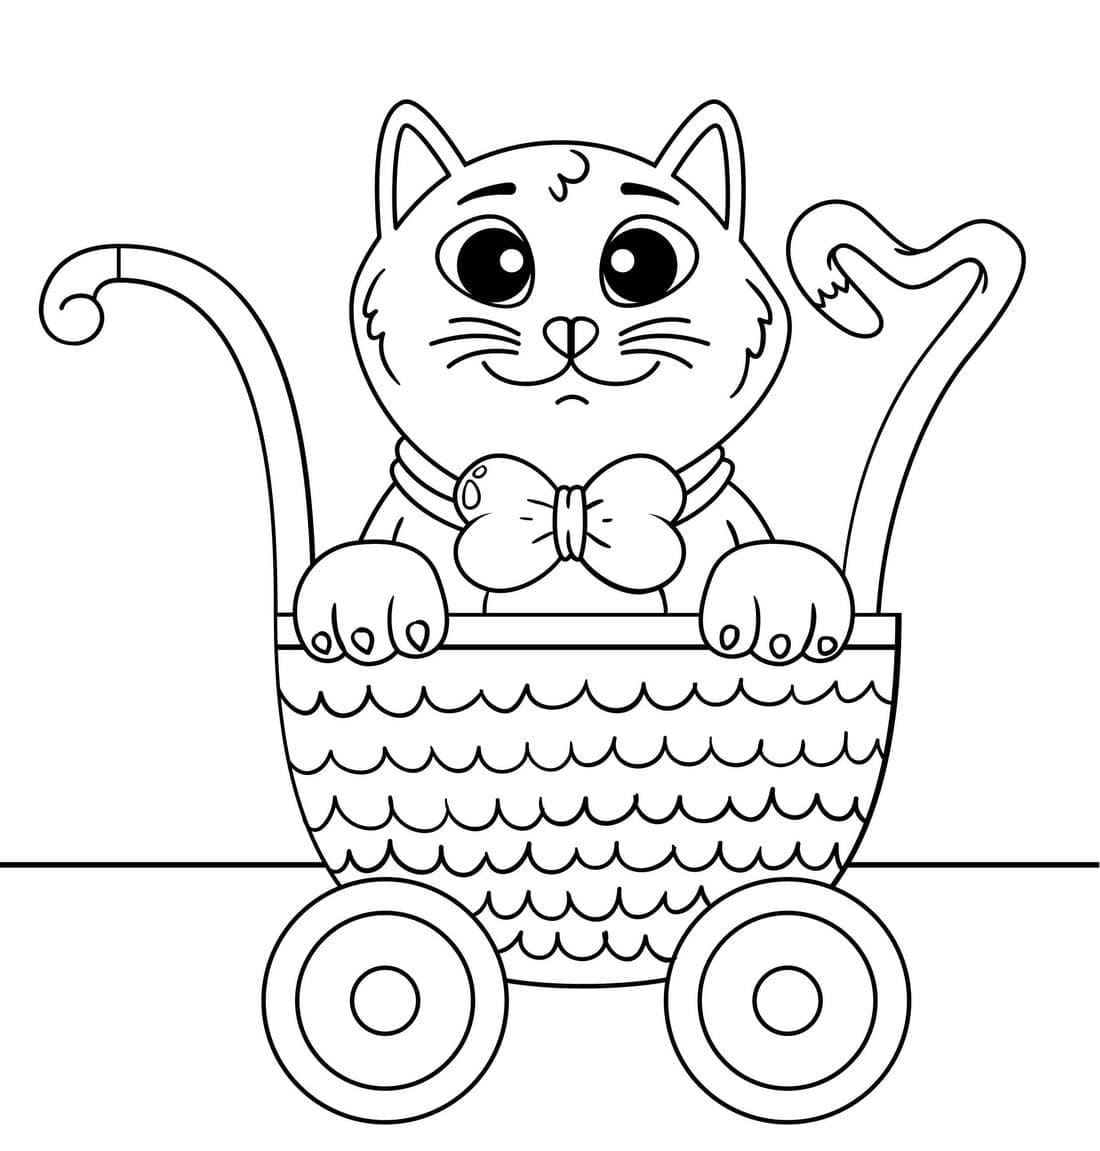 어린이를 위한 새끼 고양이 coloring page